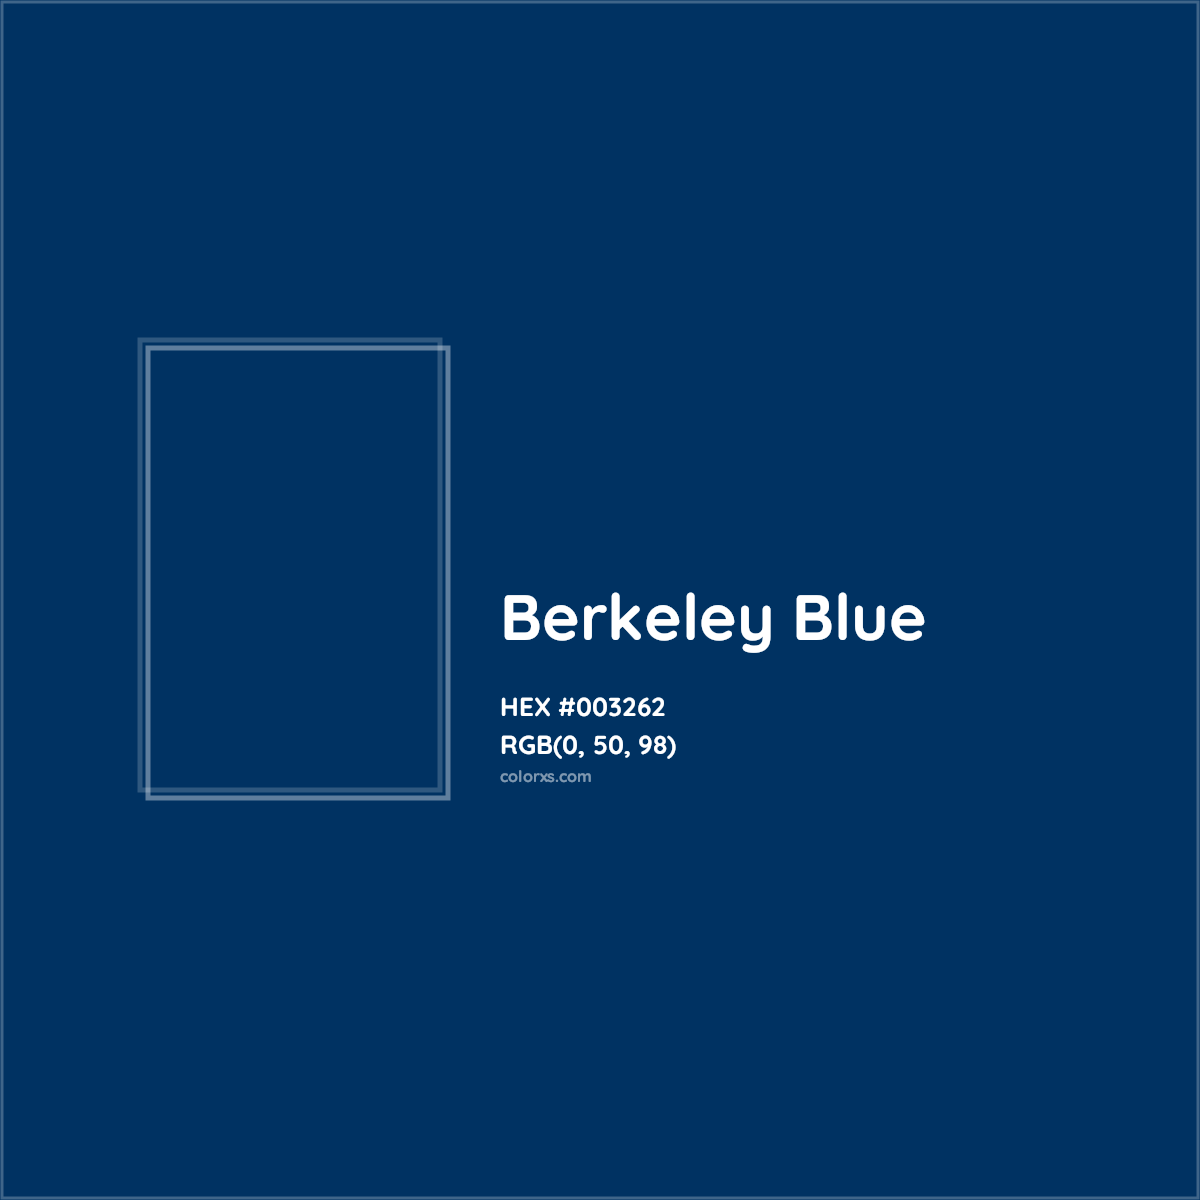 HEX #003262 Berkeley Blue Other School - Color Code